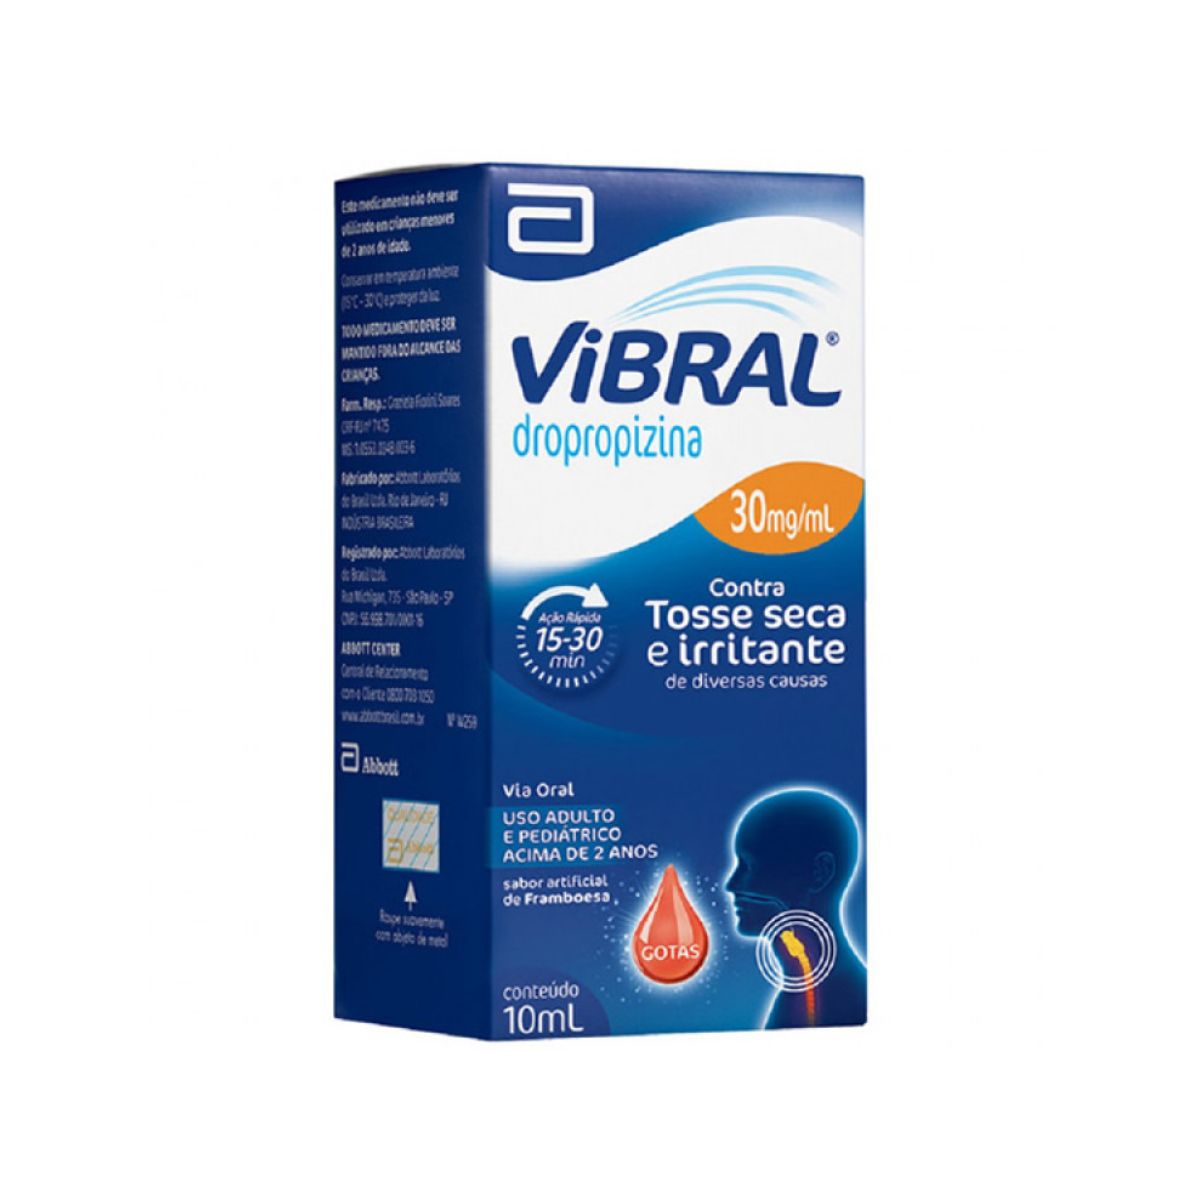 vibral-gts-10ml-1.jpg